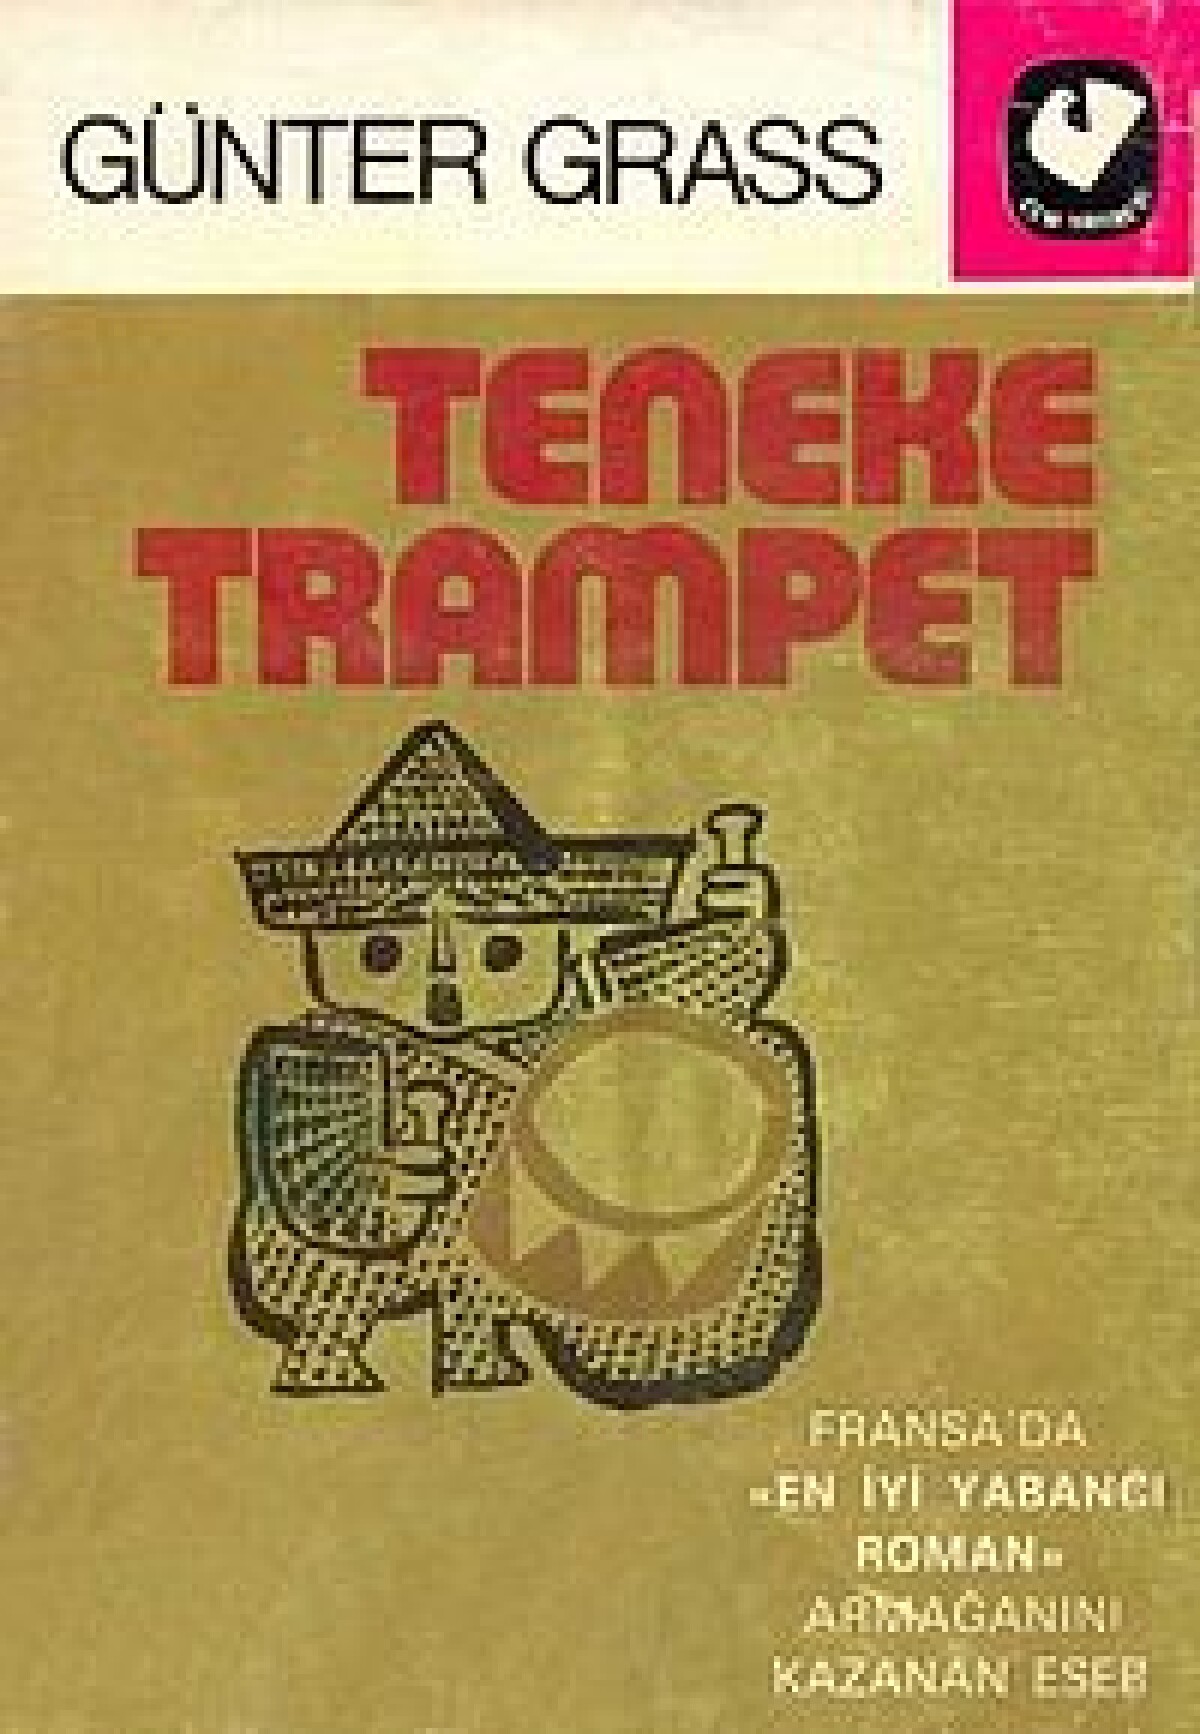 Teneke Trampet